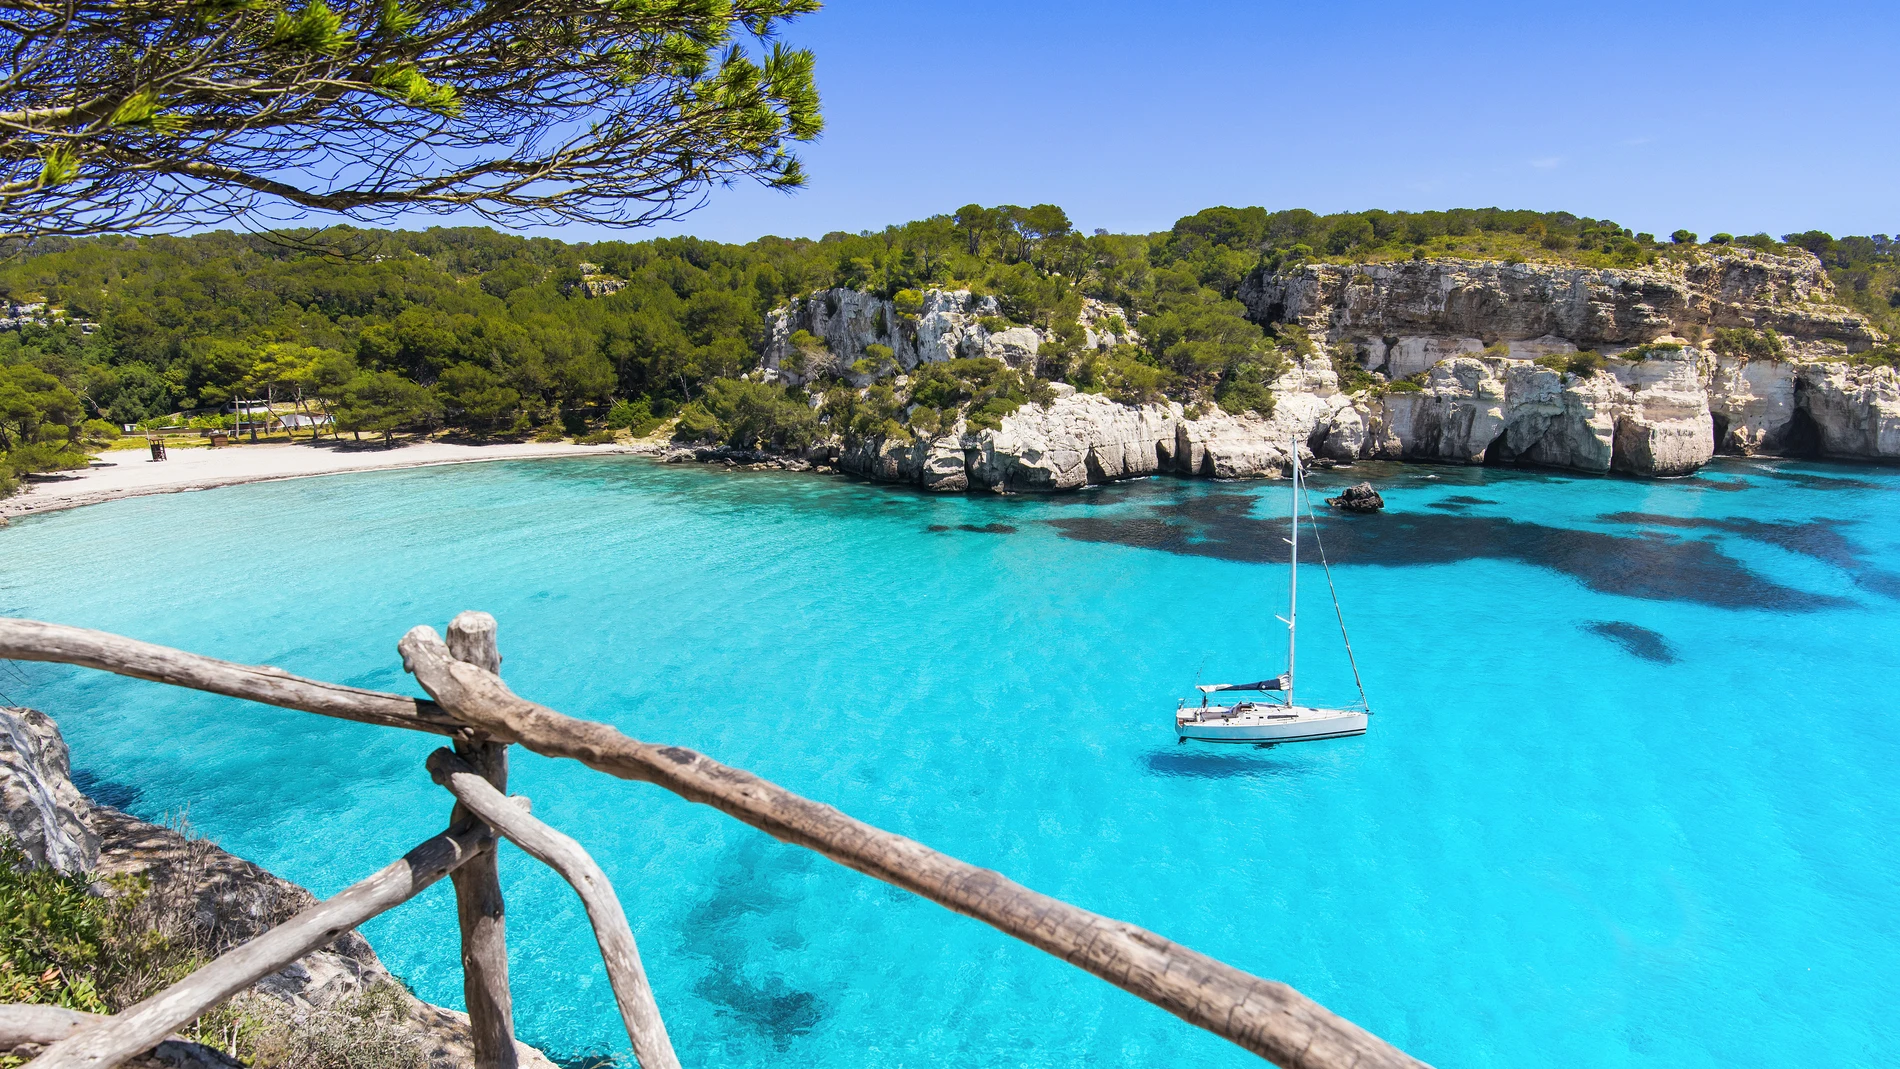 Europa cuenta con islas que son lugares maravillosos para cualquier interés de los turistas